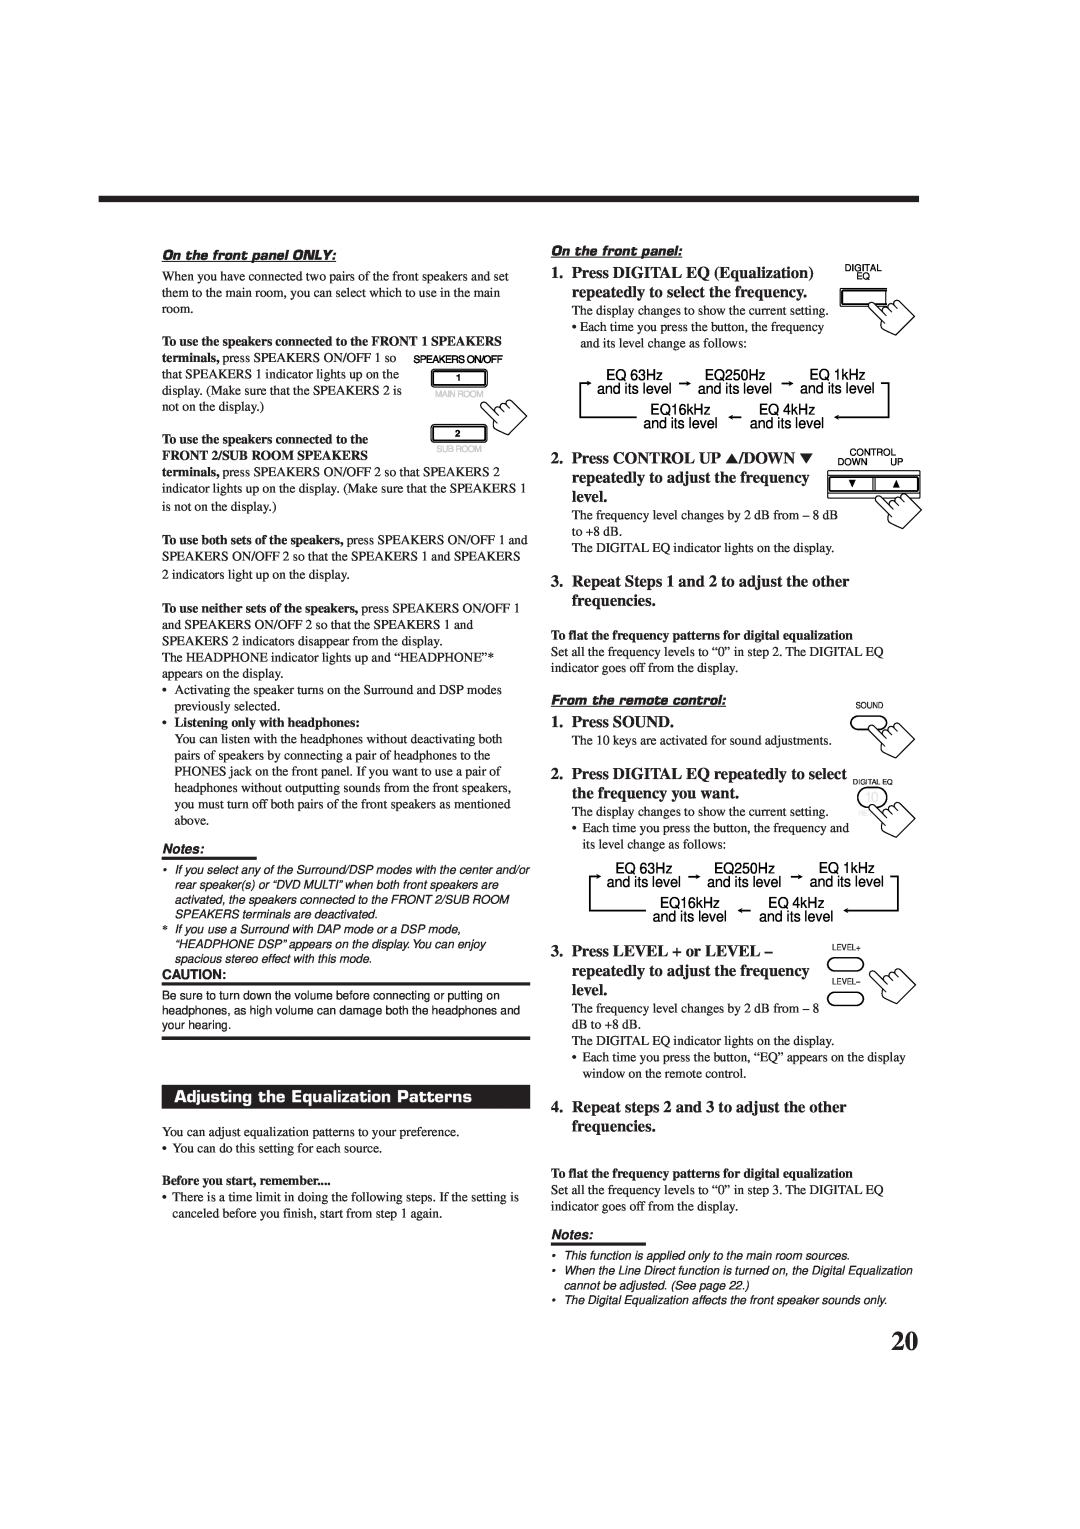 JVC RX-9010VBK manual Adjusting the Equalization Patterns 